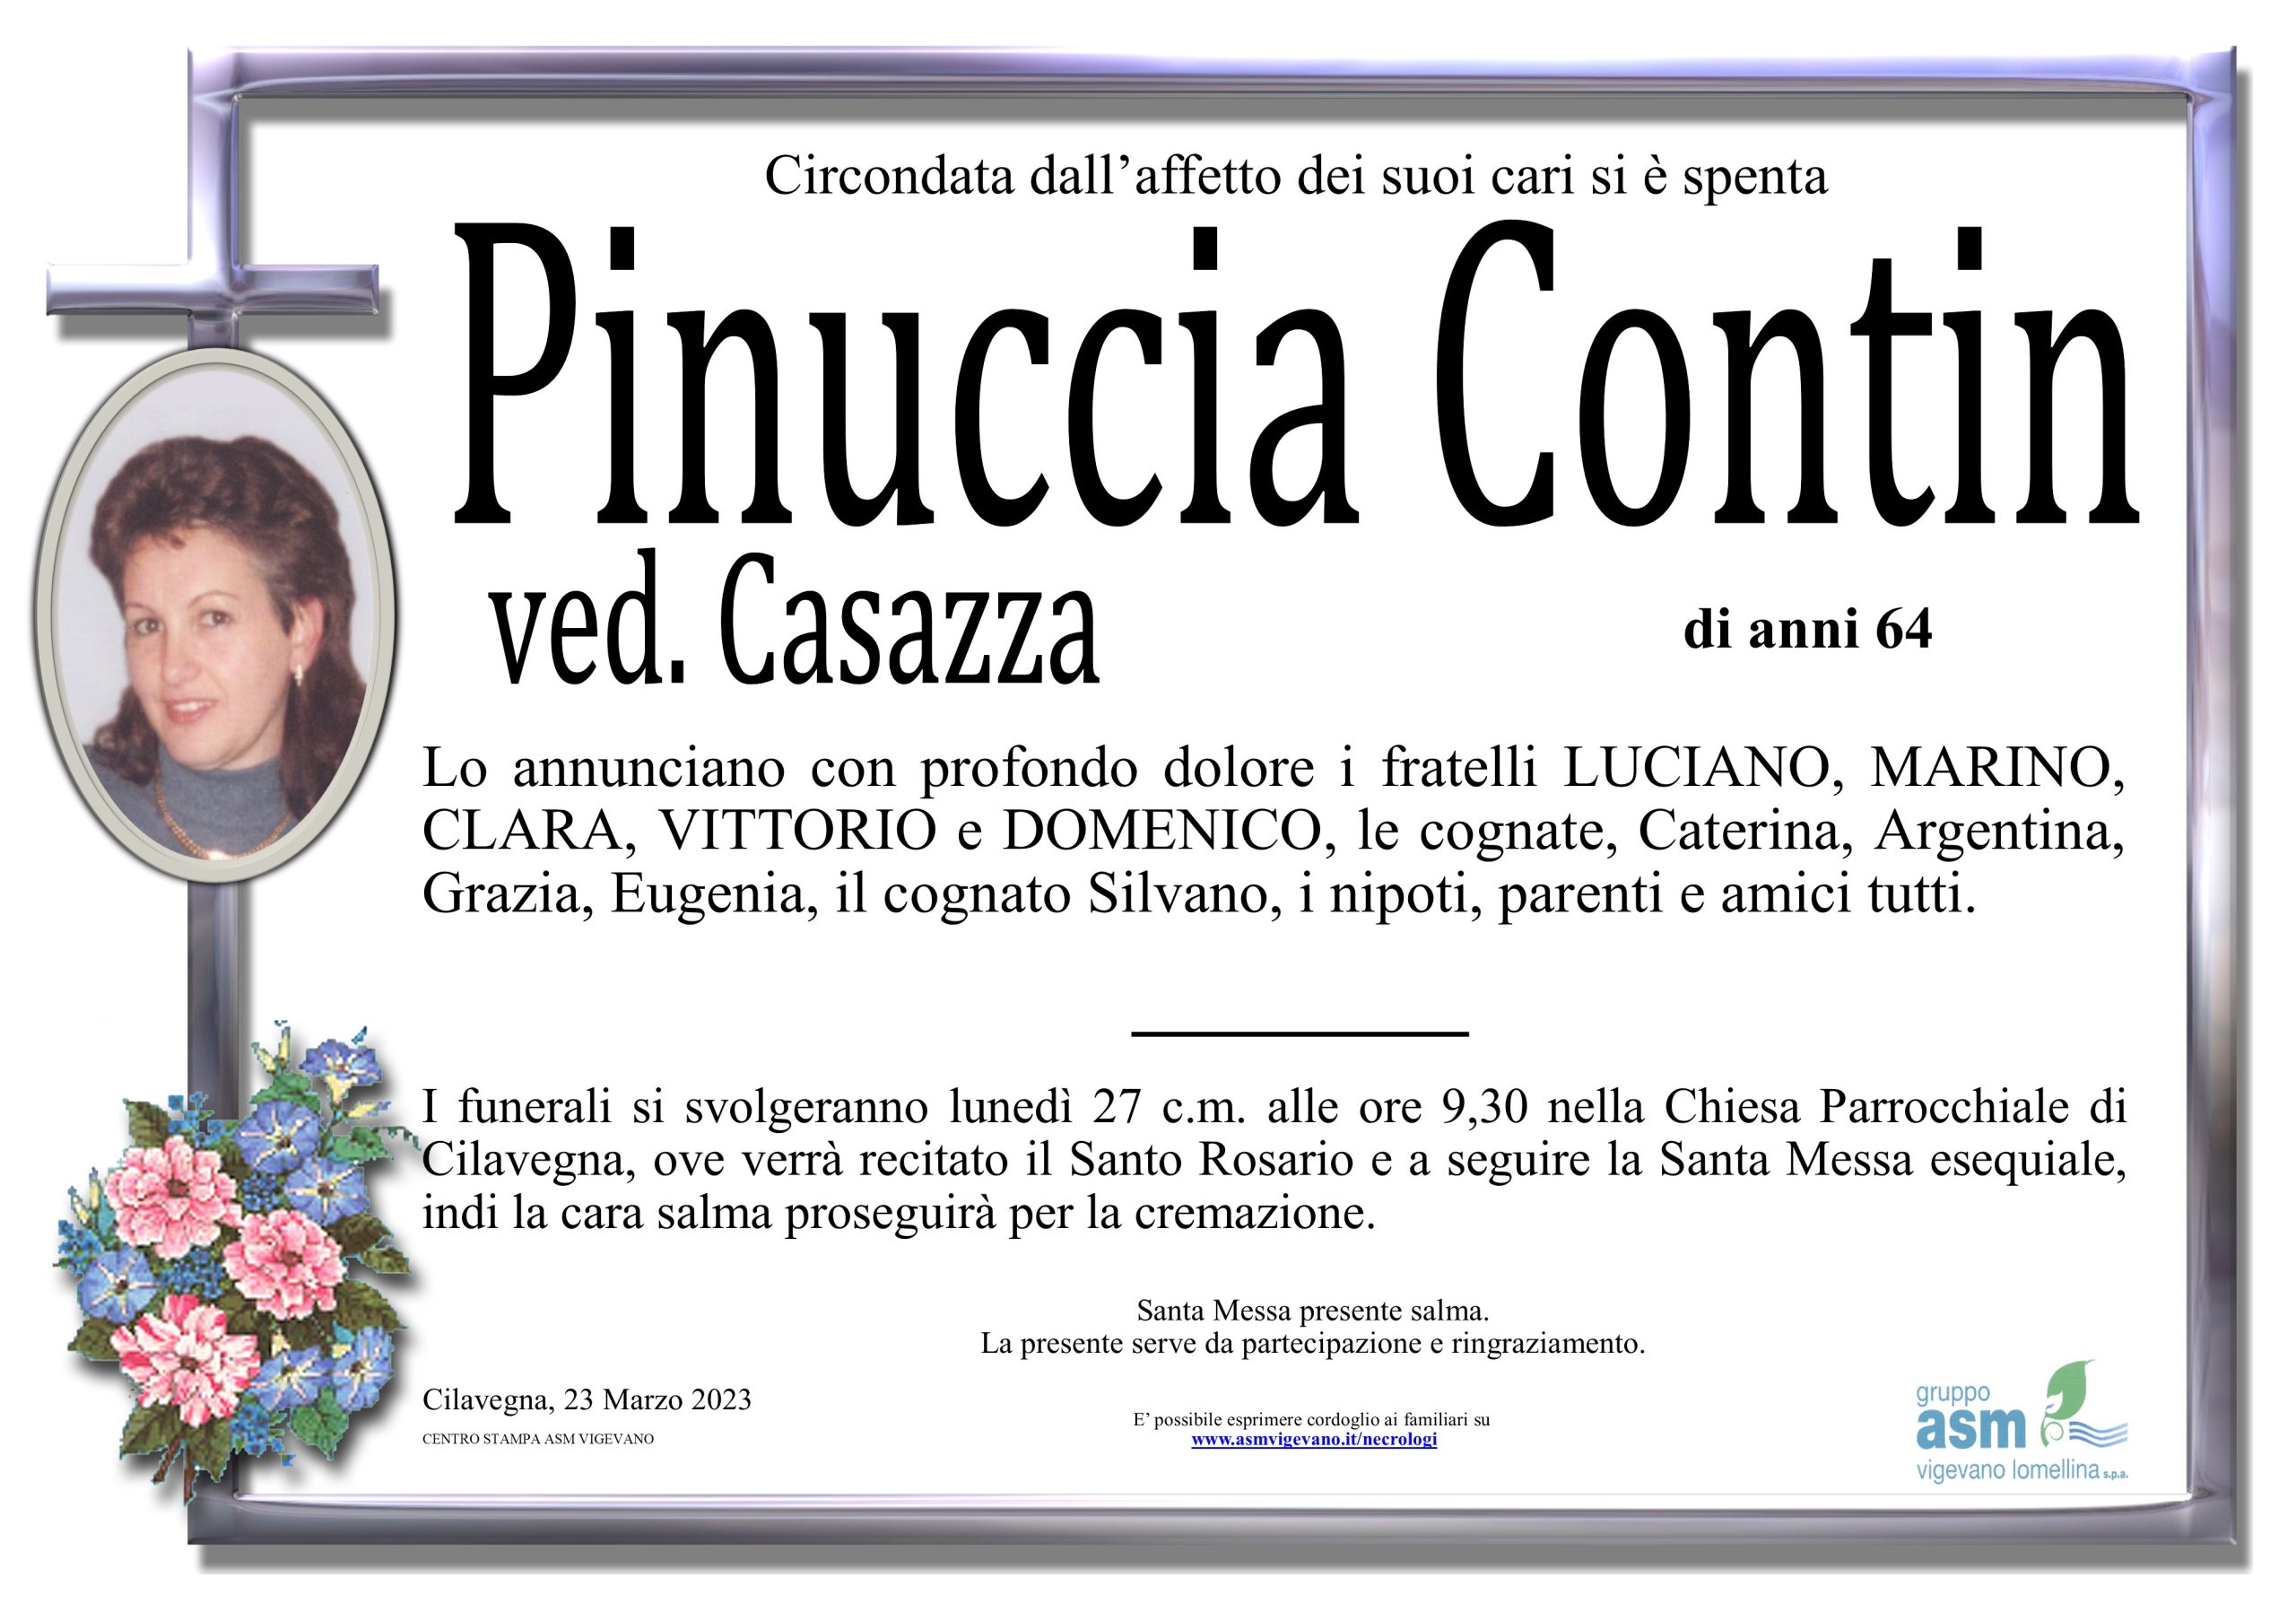 Pinuccia Contin